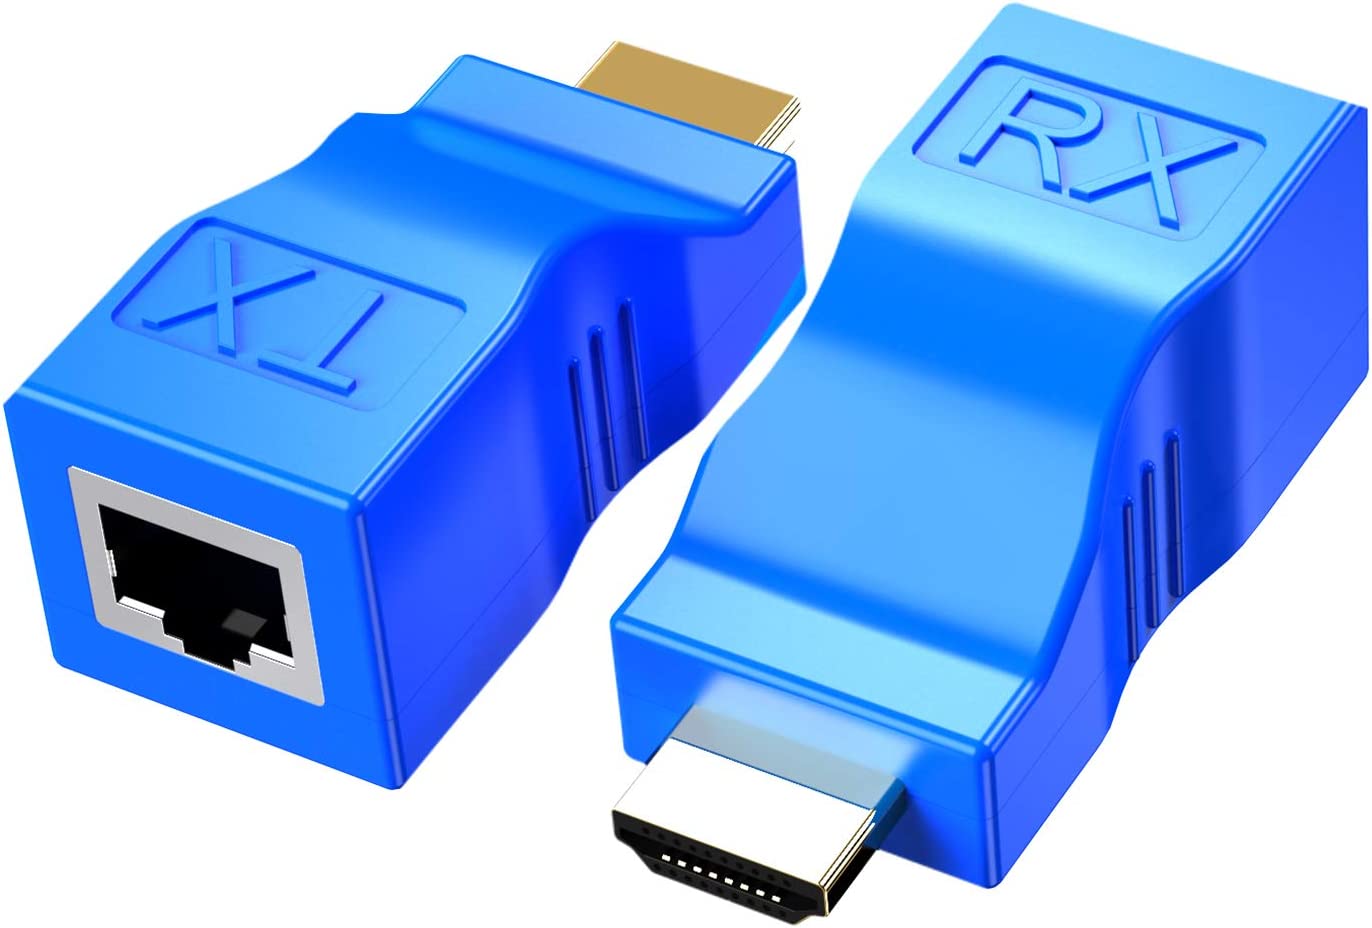 Cable USB A-Macho a A-Hembra 6FT Extensiones Usb - Globatec SRL